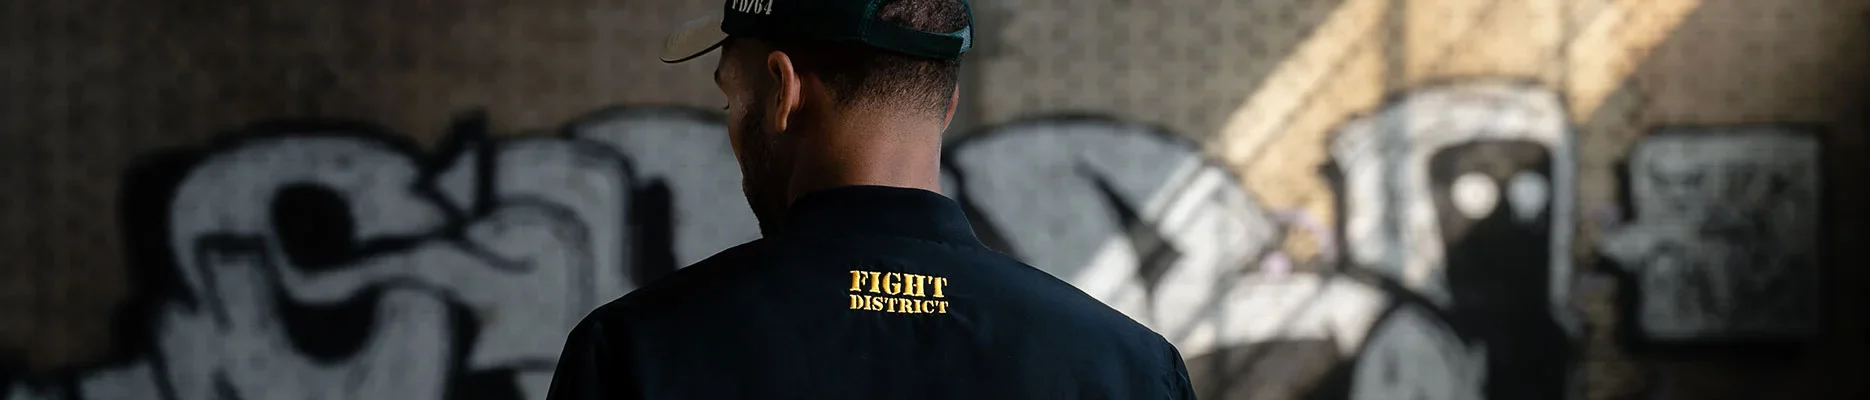 Un homme de dos, on peut voir sur sa veste et sa casquette le logo de Fight District